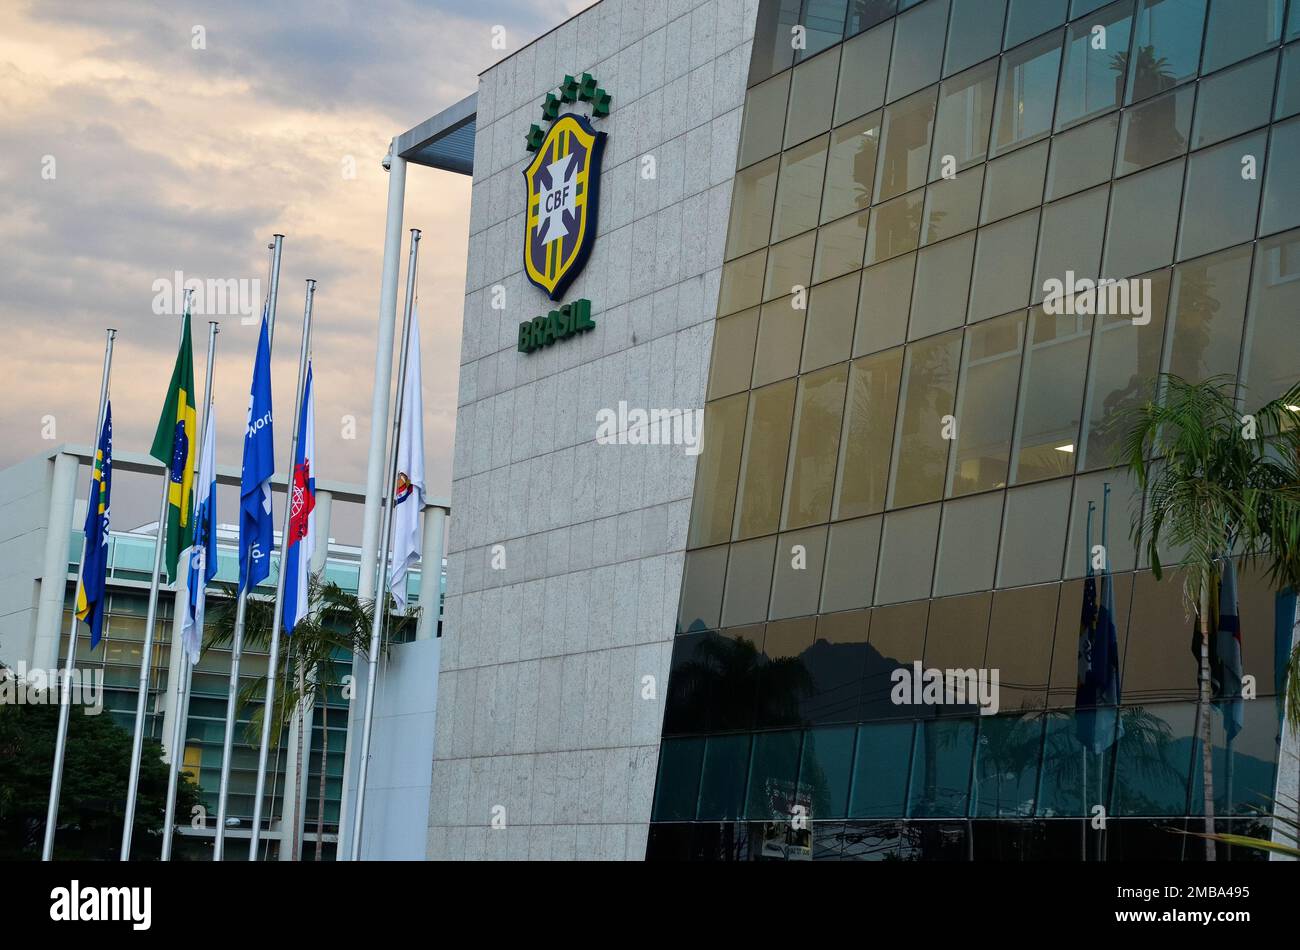 Confederazione brasiliana di calcio CBF sede centrale edificio, vista generale. L'emblema della confederazione di calcio è visto sulla parte anteriore - 05.28.2015 Foto Stock